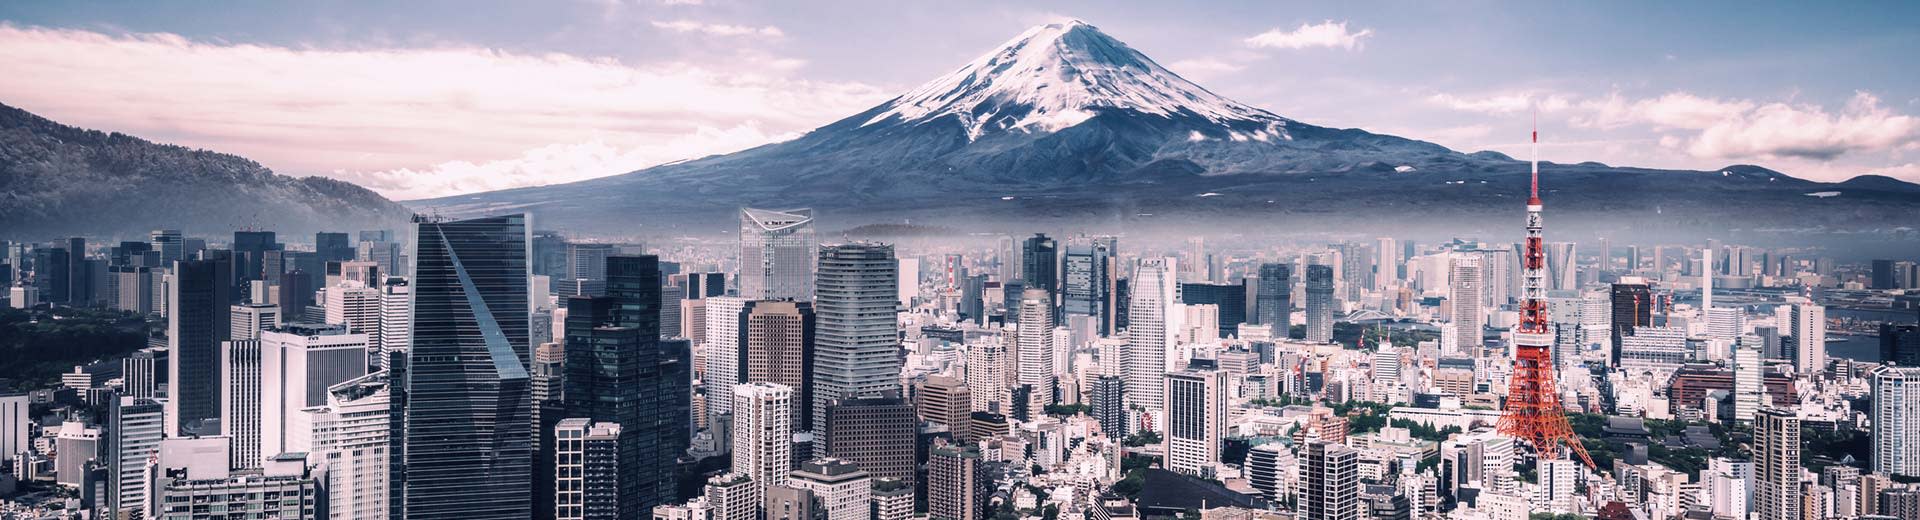 La ville tentaculaire de Tokyo se trouve devant le célèbre mont Fuji, avec plus de gratte-ciel que vous ne pouvez compter au premier plan.